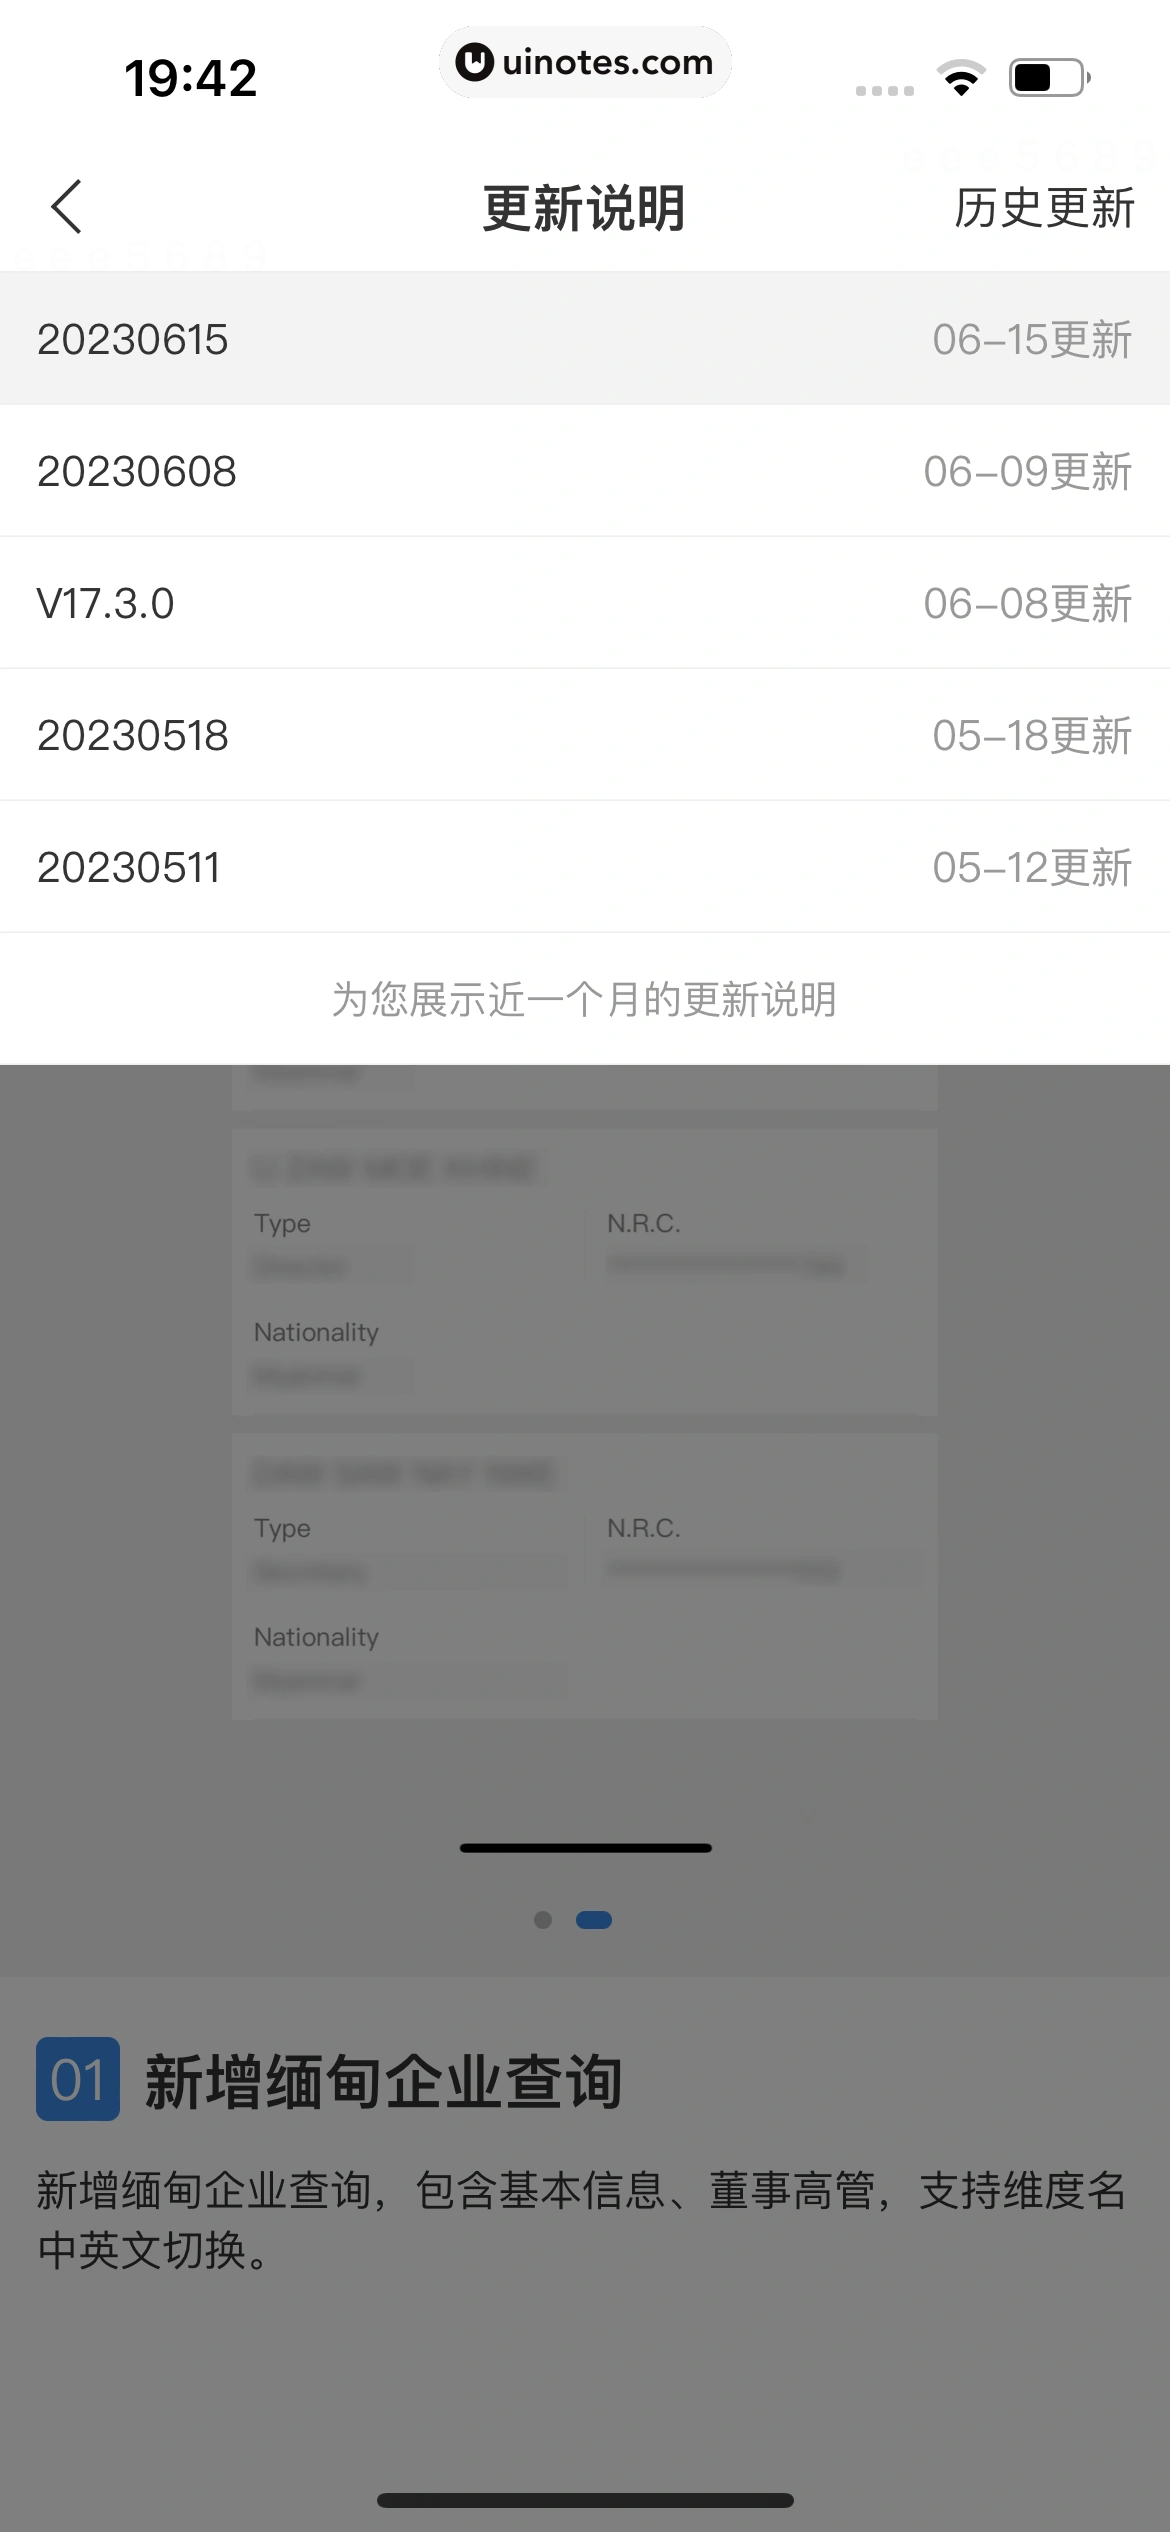 企查查 App 截图 630 - UI Notes